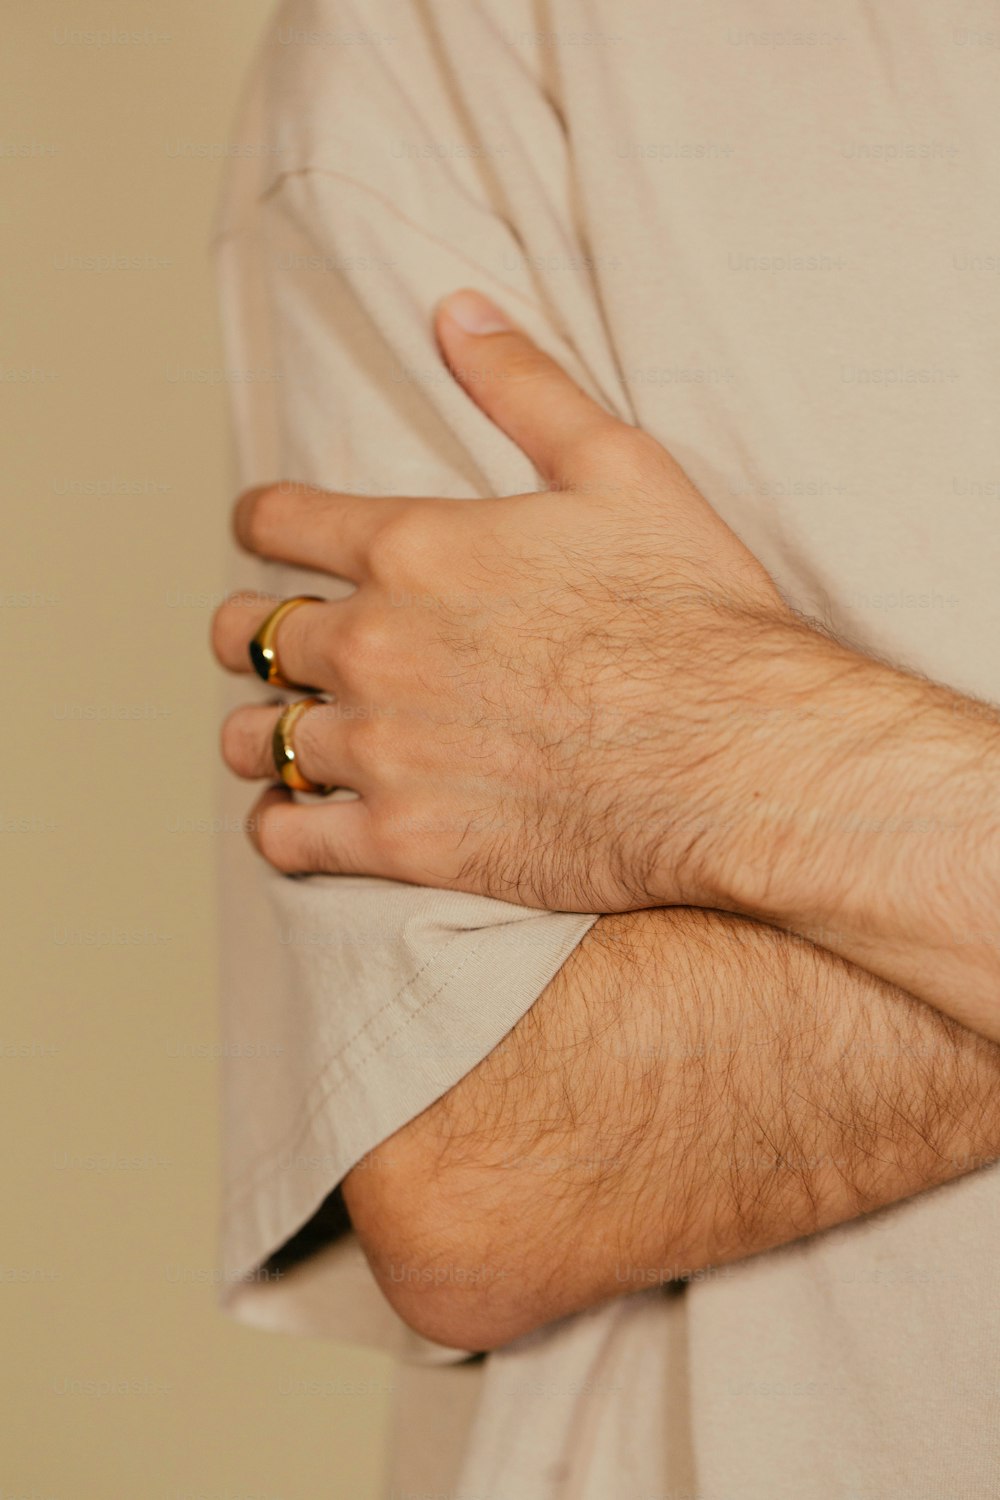 um close up de uma pessoa usando dois anéis